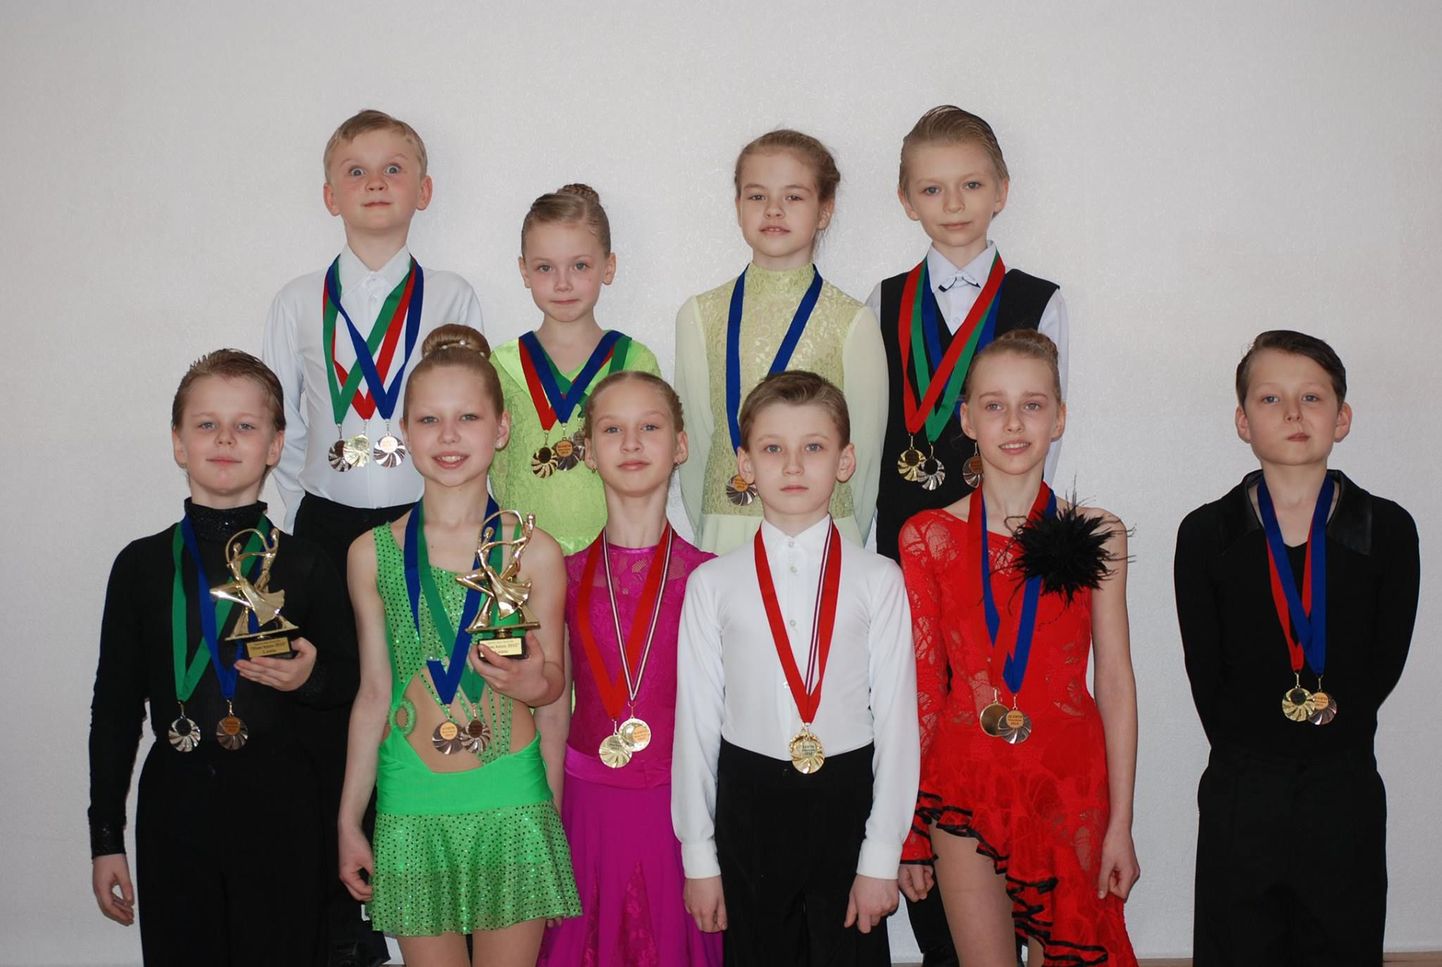 Rahvusvahelisel tantsuvõistlusel «Dīva Cup 2015» osalesid Valga tantsuklubist Cris viis tantsupaari, kes kõik tõid koju mitu medalit. Vasakult esimesed Sivert Raide ja Ketlin Kopp võistluselt saadud uhkete karikatega.